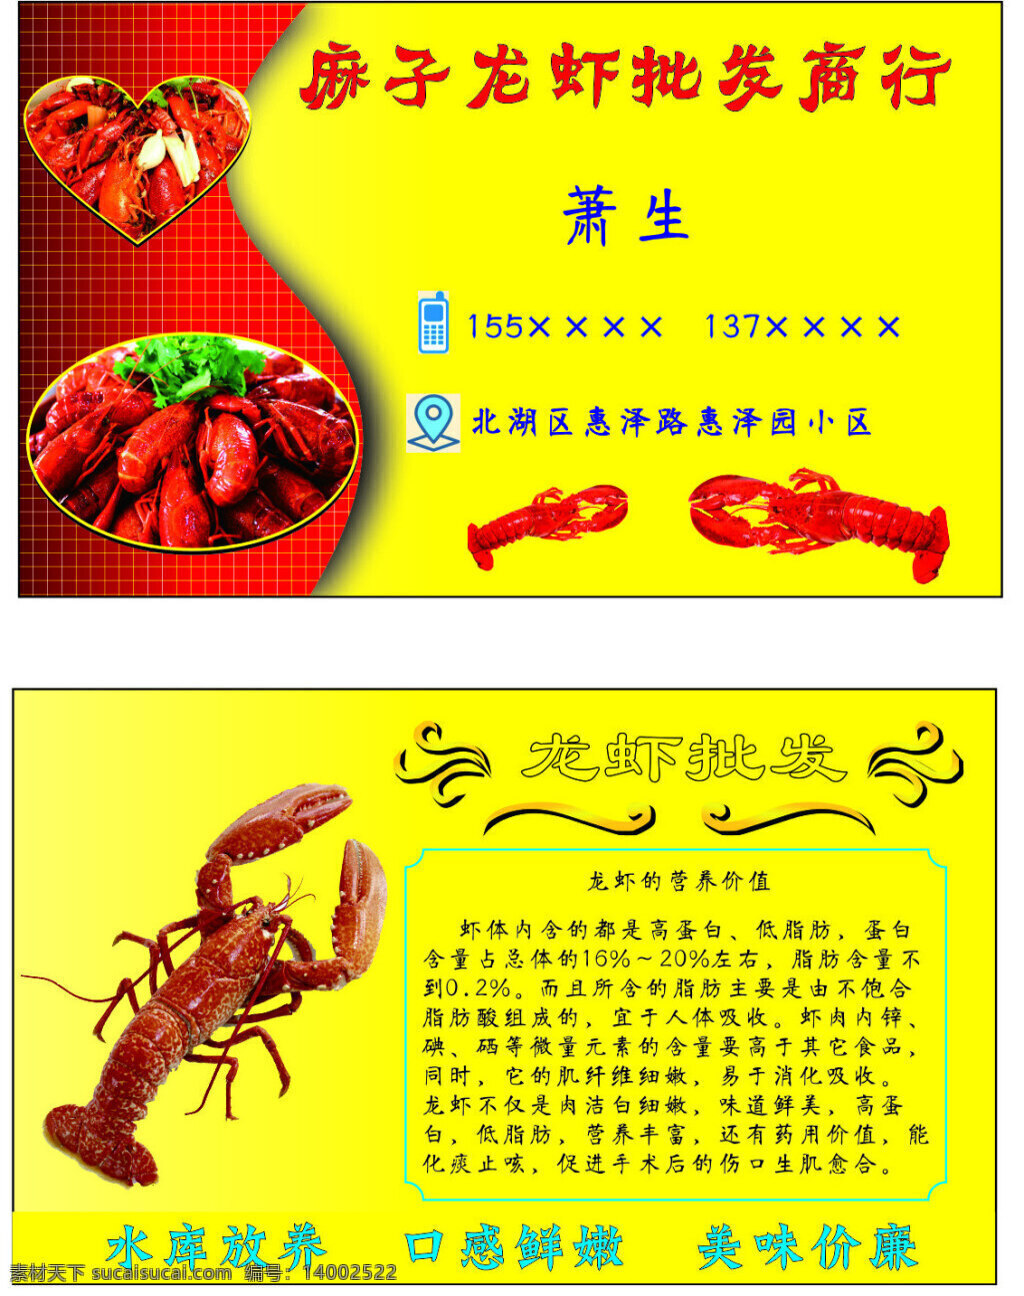 麻子 龙虾 批发 商行 名片 龙虾批发 地址电话 龙虾营养价值